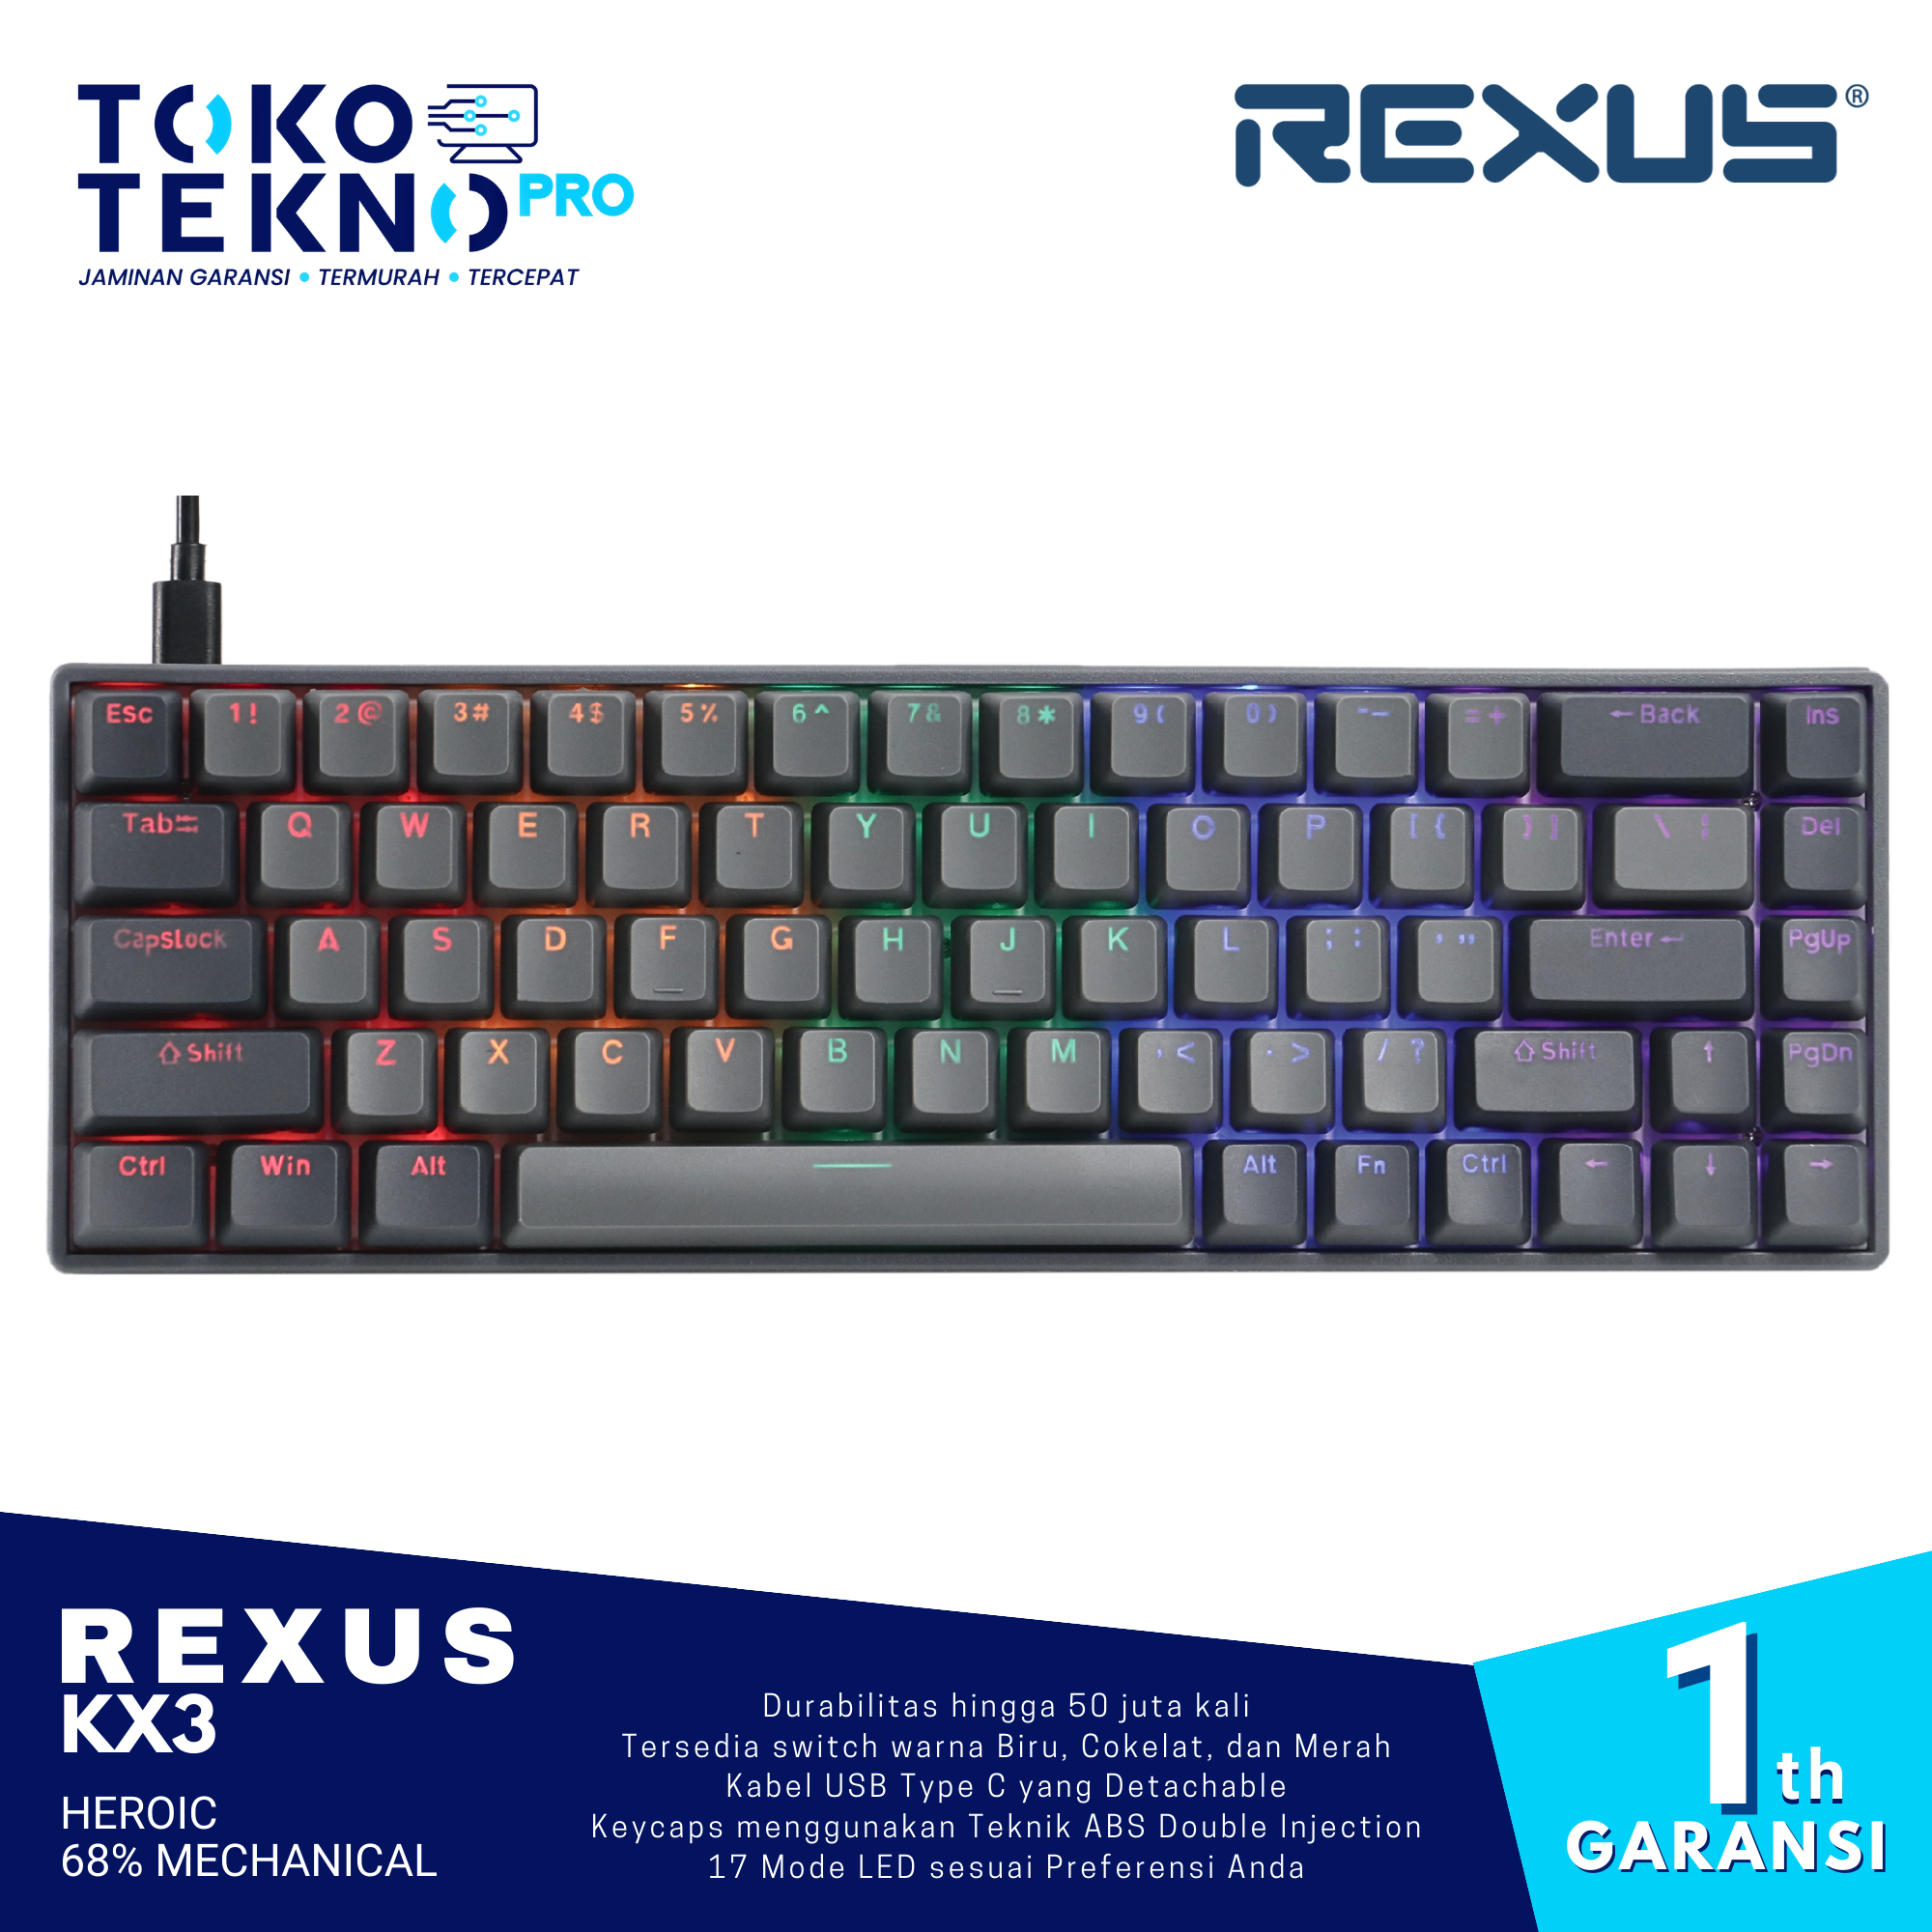 Rexus KX3 Heroic 68% Mechanical Gaming Keyboard